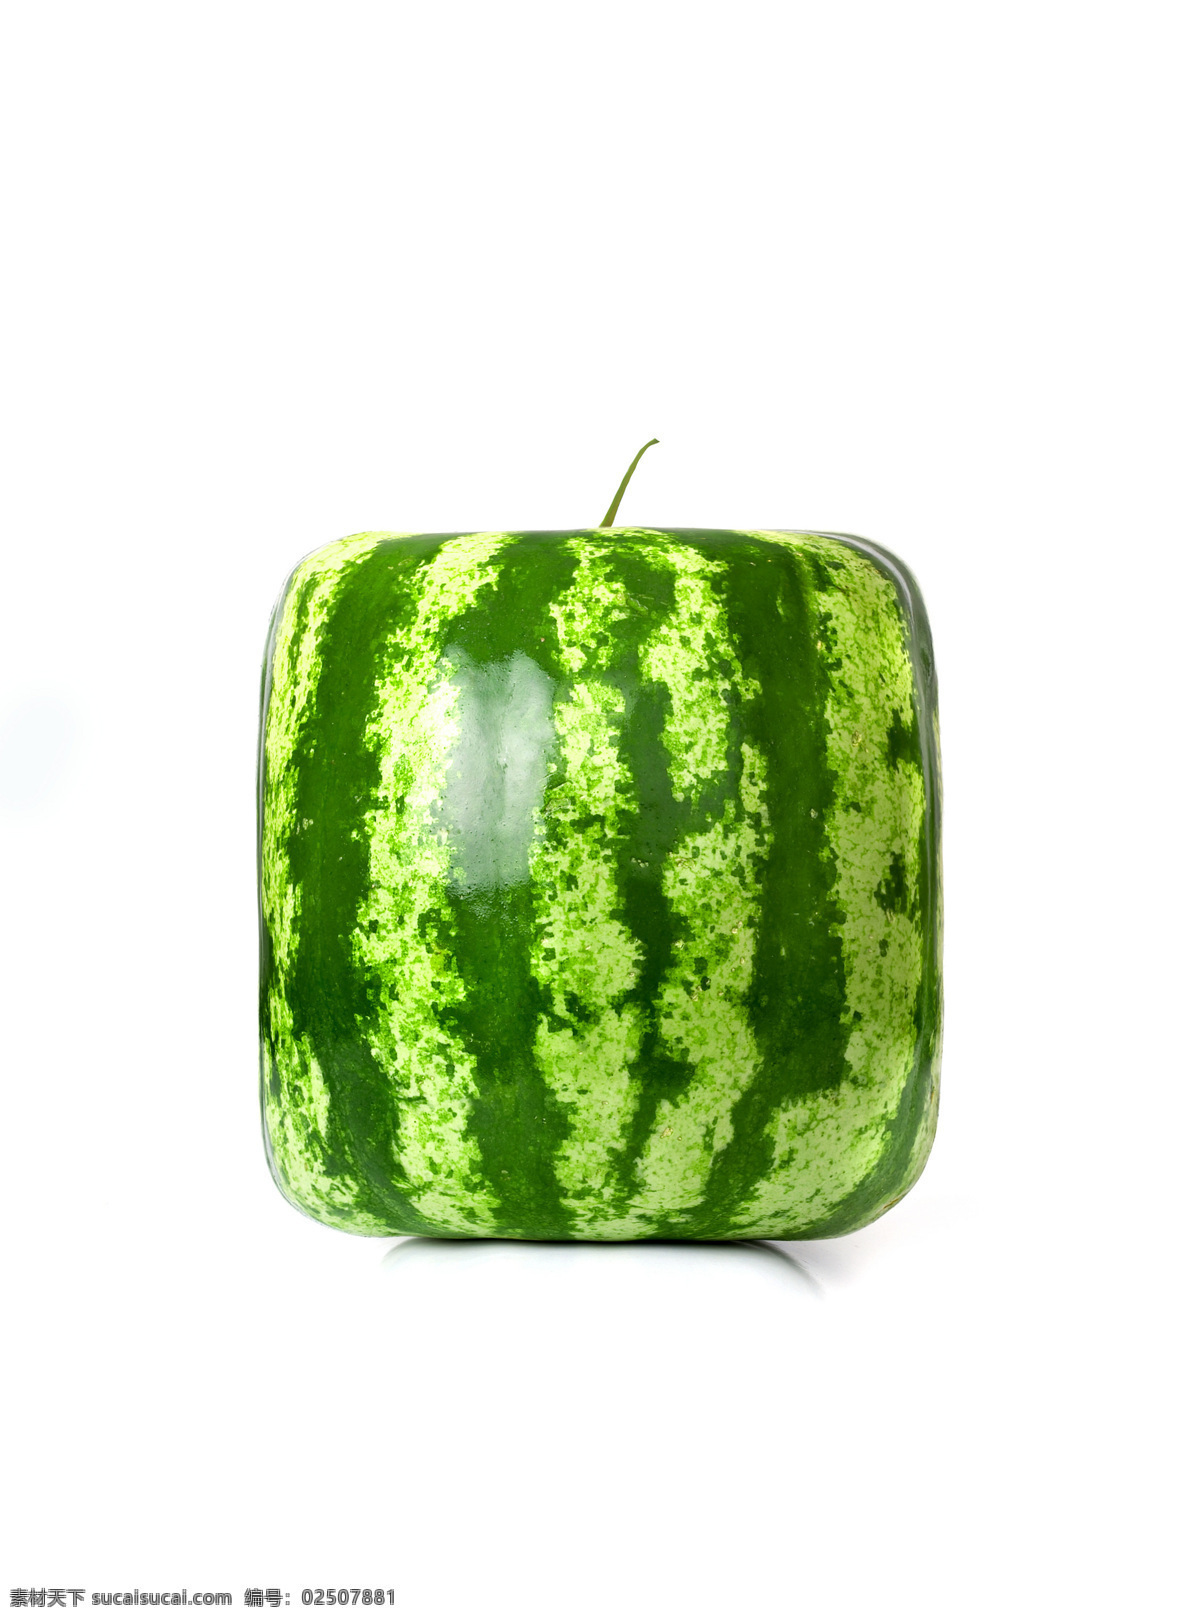 正方形 西瓜 创意西瓜图 水果 西瓜图片 餐饮美食